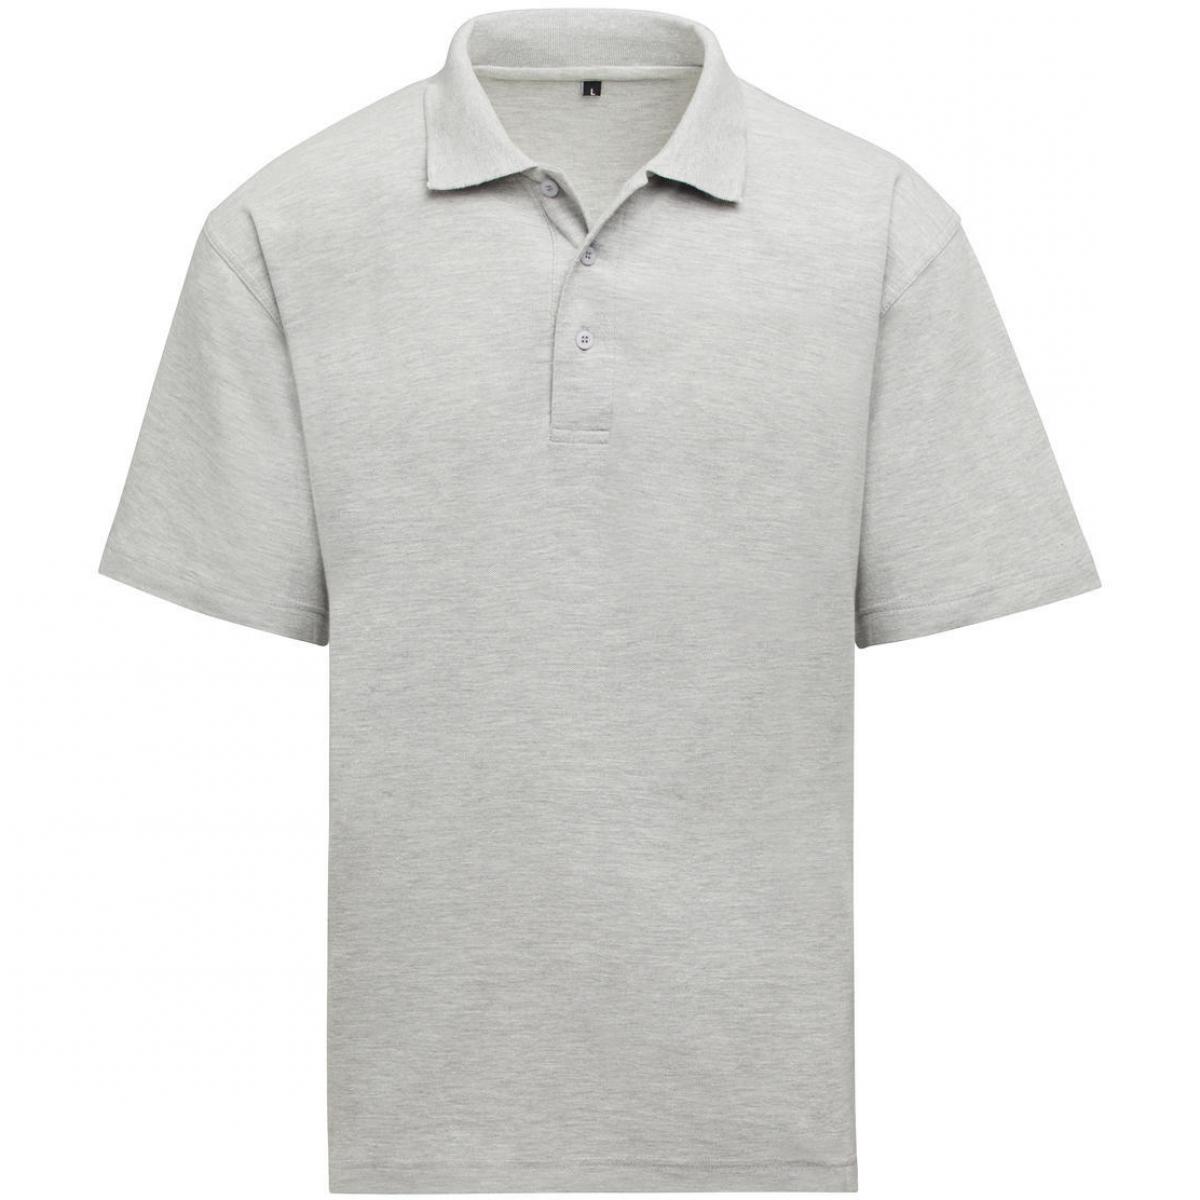 Hersteller: SG Herstellernummer: SGE501 Artikelbezeichnung: Unisex Poloshirt - Workwear - 60°C waschbar Farbe: Heather Grey